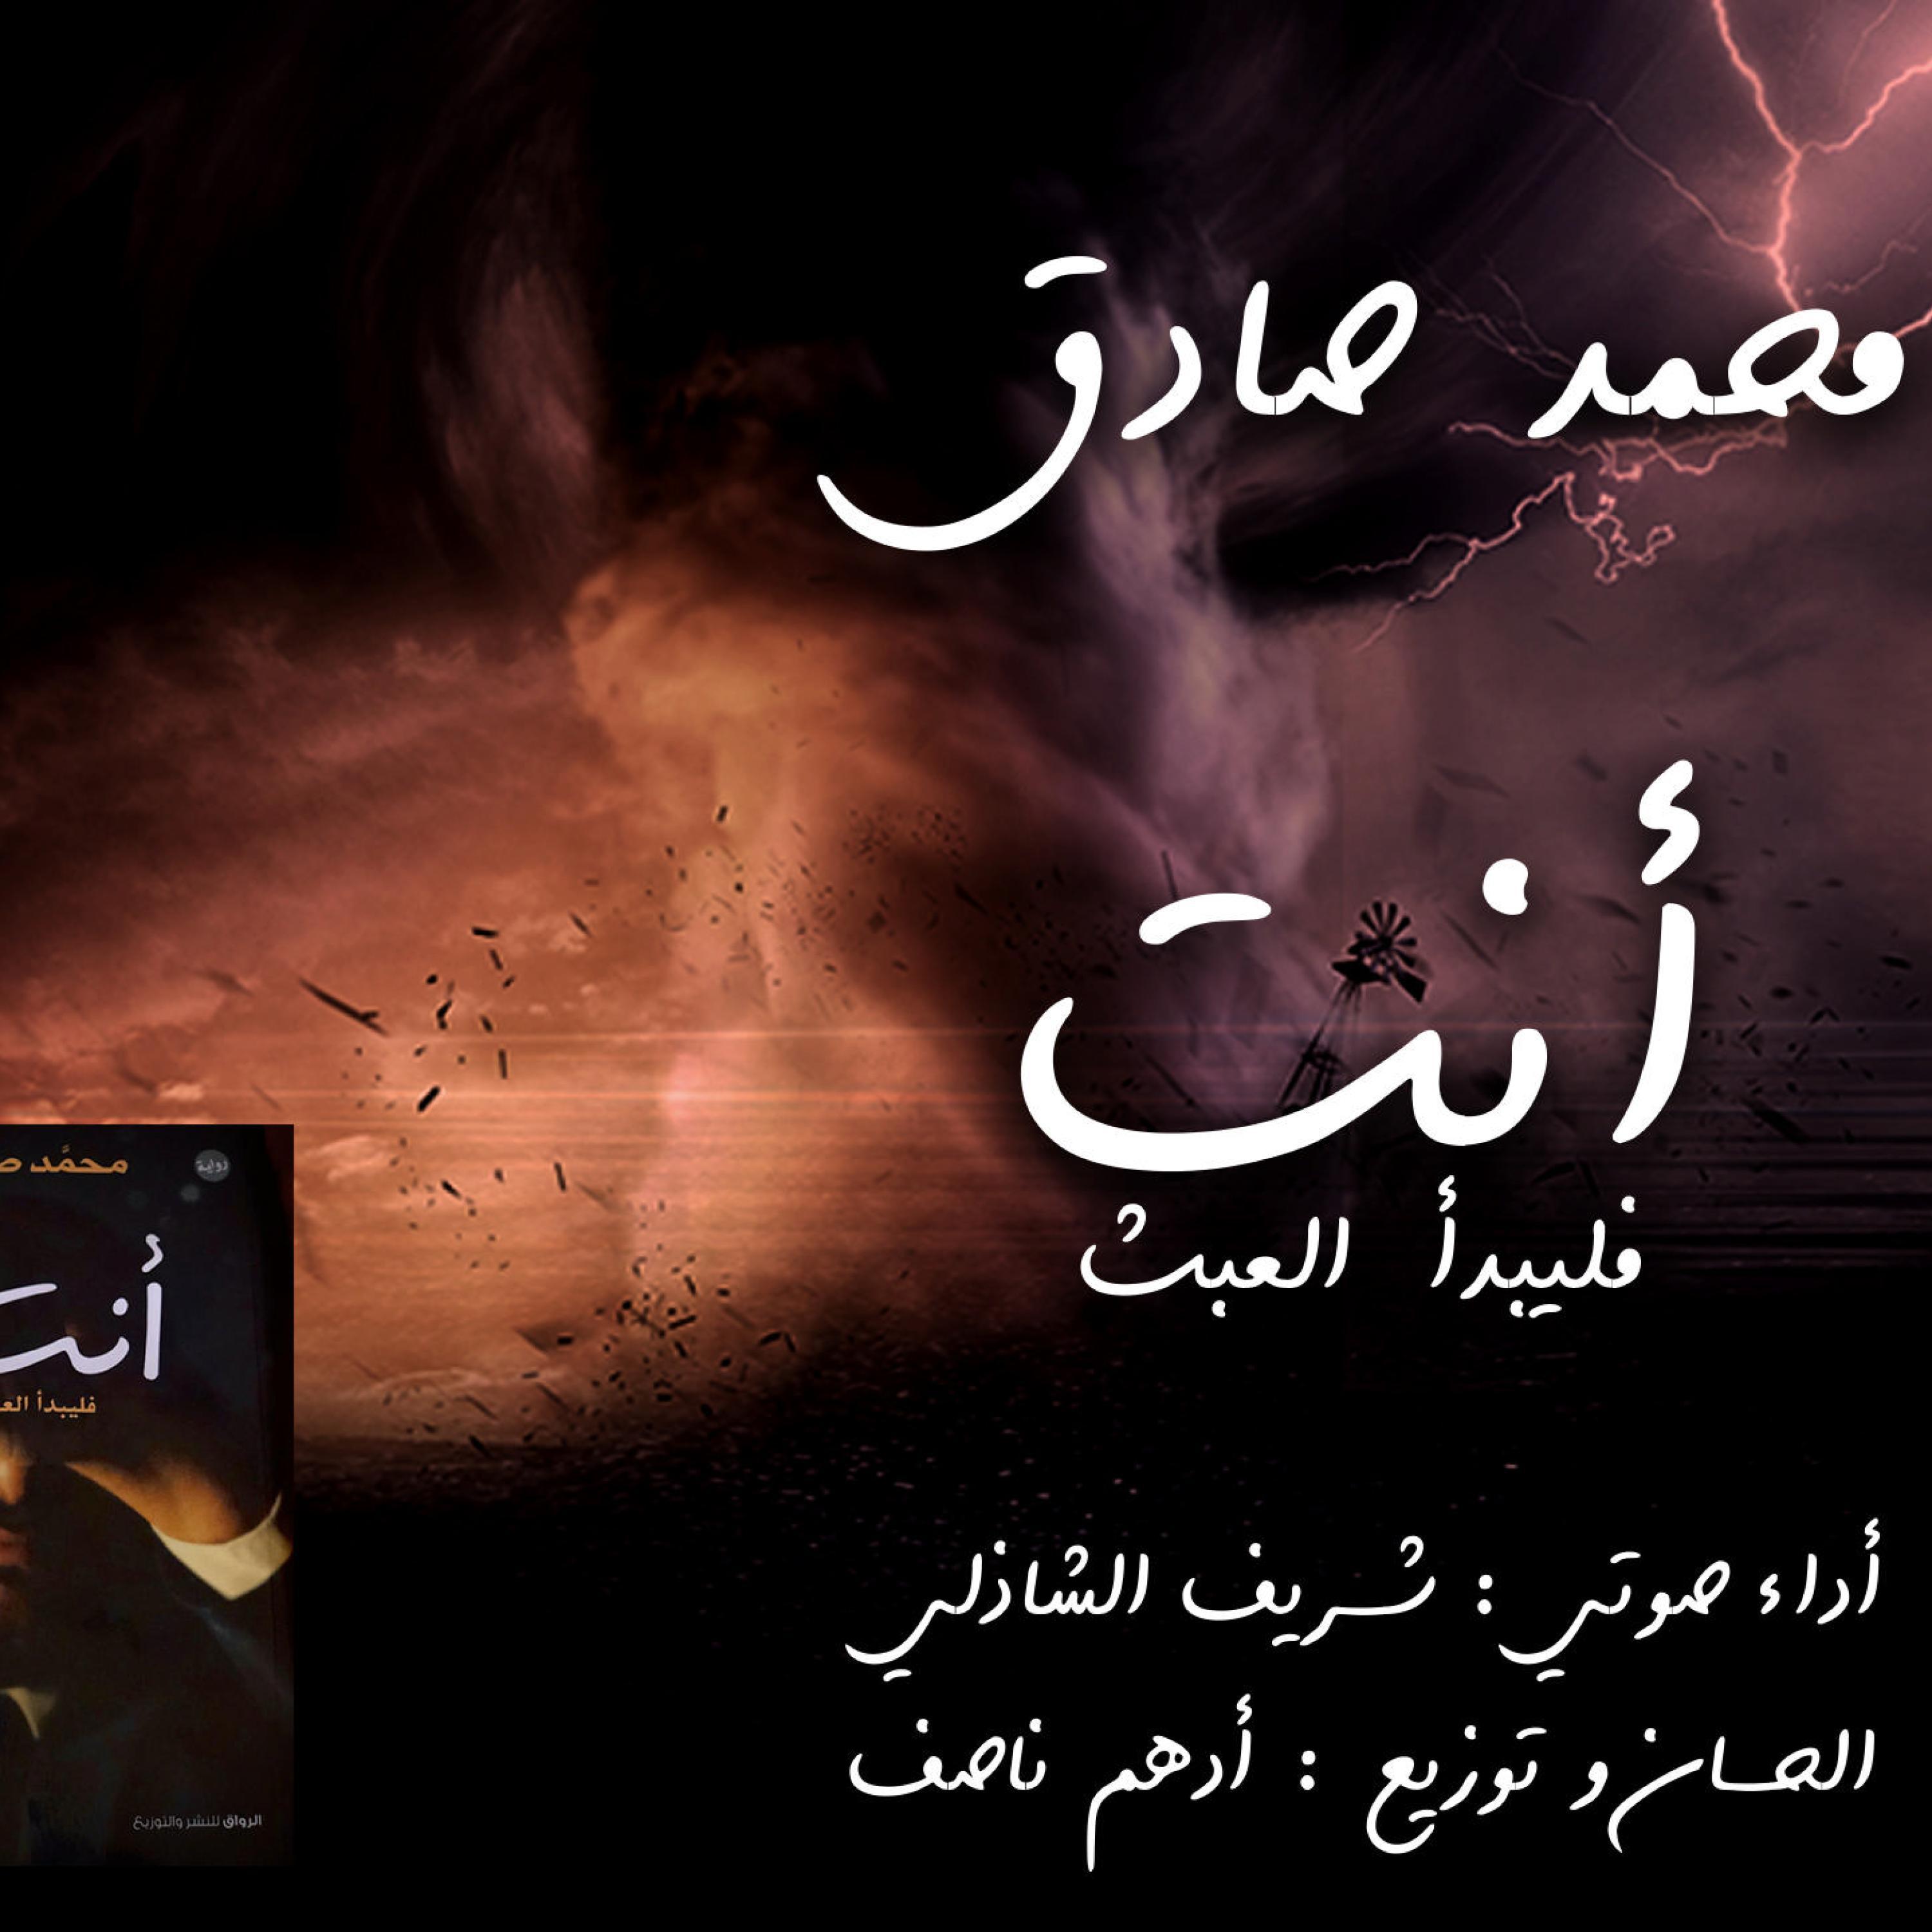 Adham Nassef - الموسيقي الرسمية لرواية أنت...فليبدأ العبث